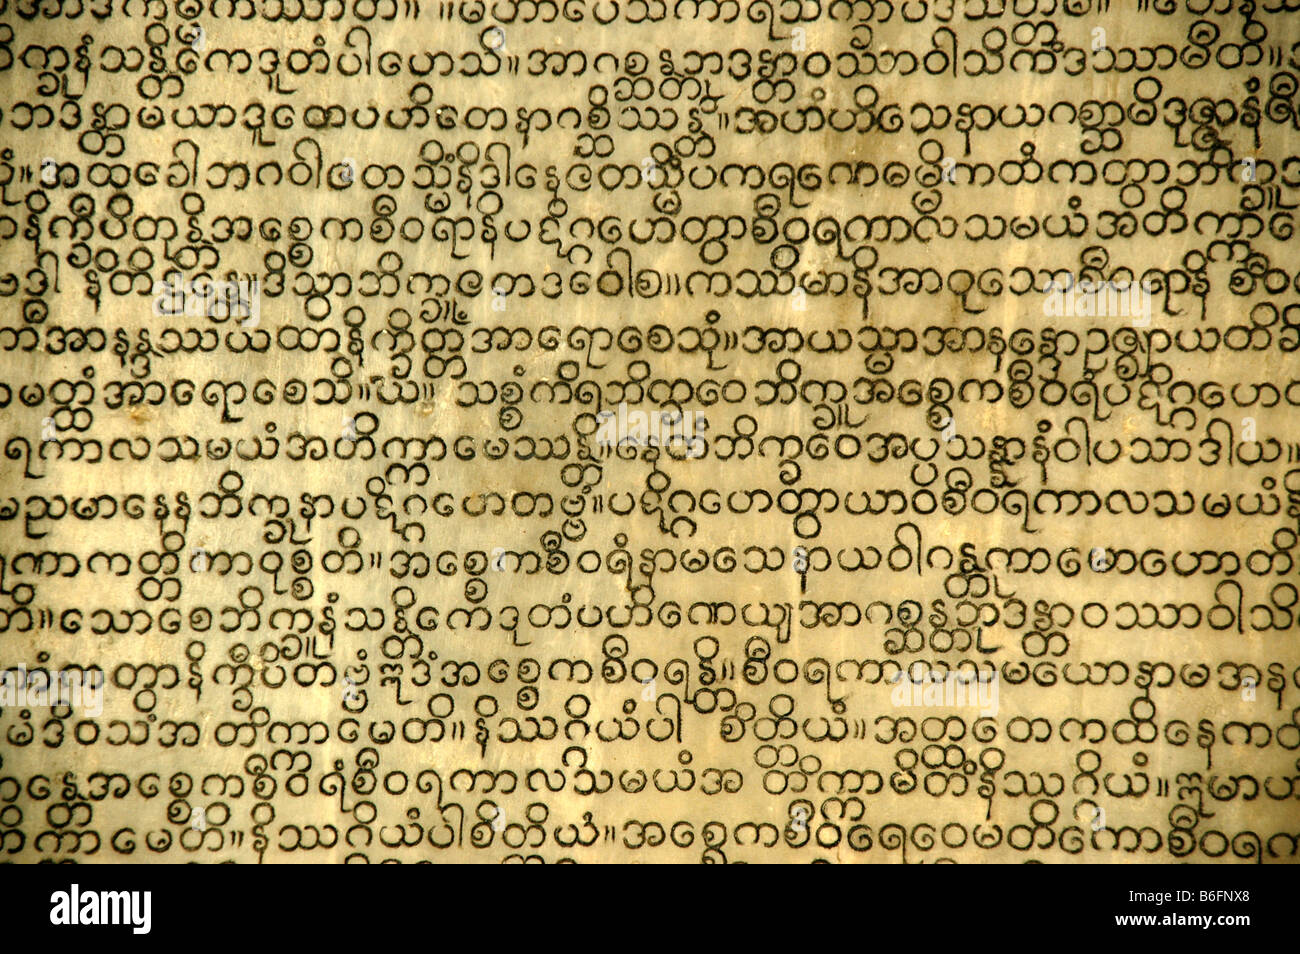 Burmese writing, Pali canon, buddhist canon, tripitaka, library of stone tablets, Theravada Buddhism, Kuthodaw Pagoda, Mandalay Stock Photo